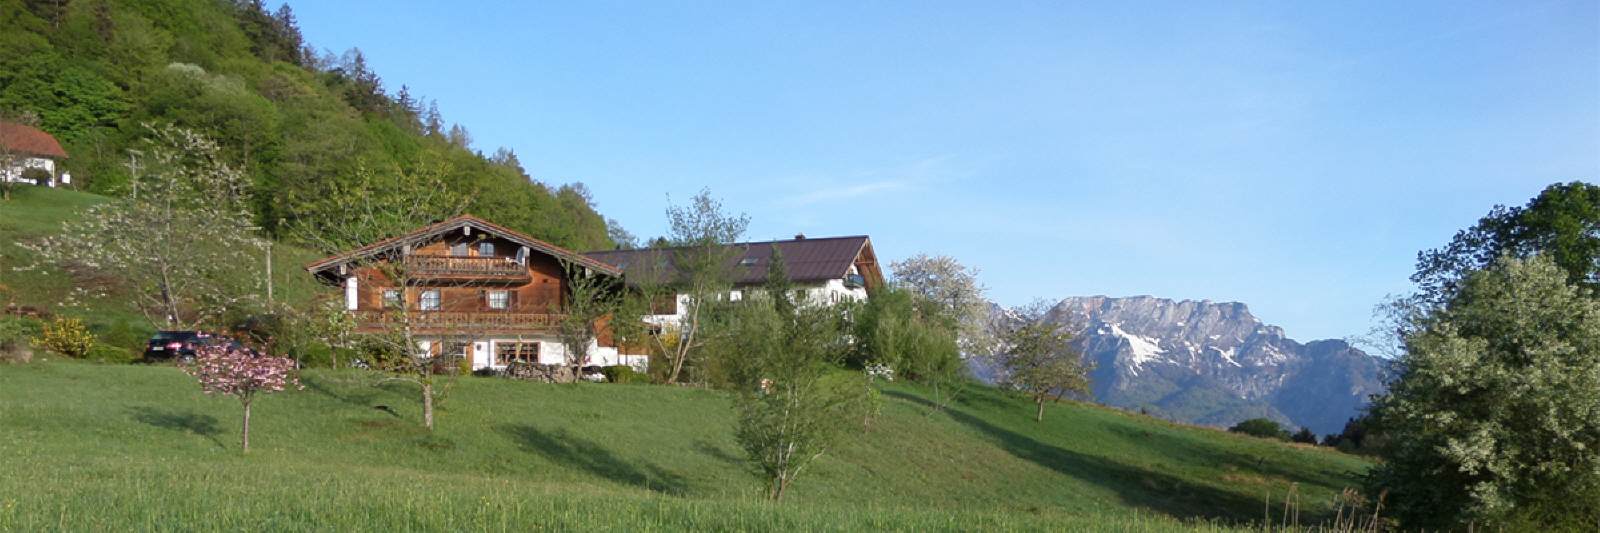 Willkommen in der Pension Lehnhäusl in Oberau bei Berchtesgaden